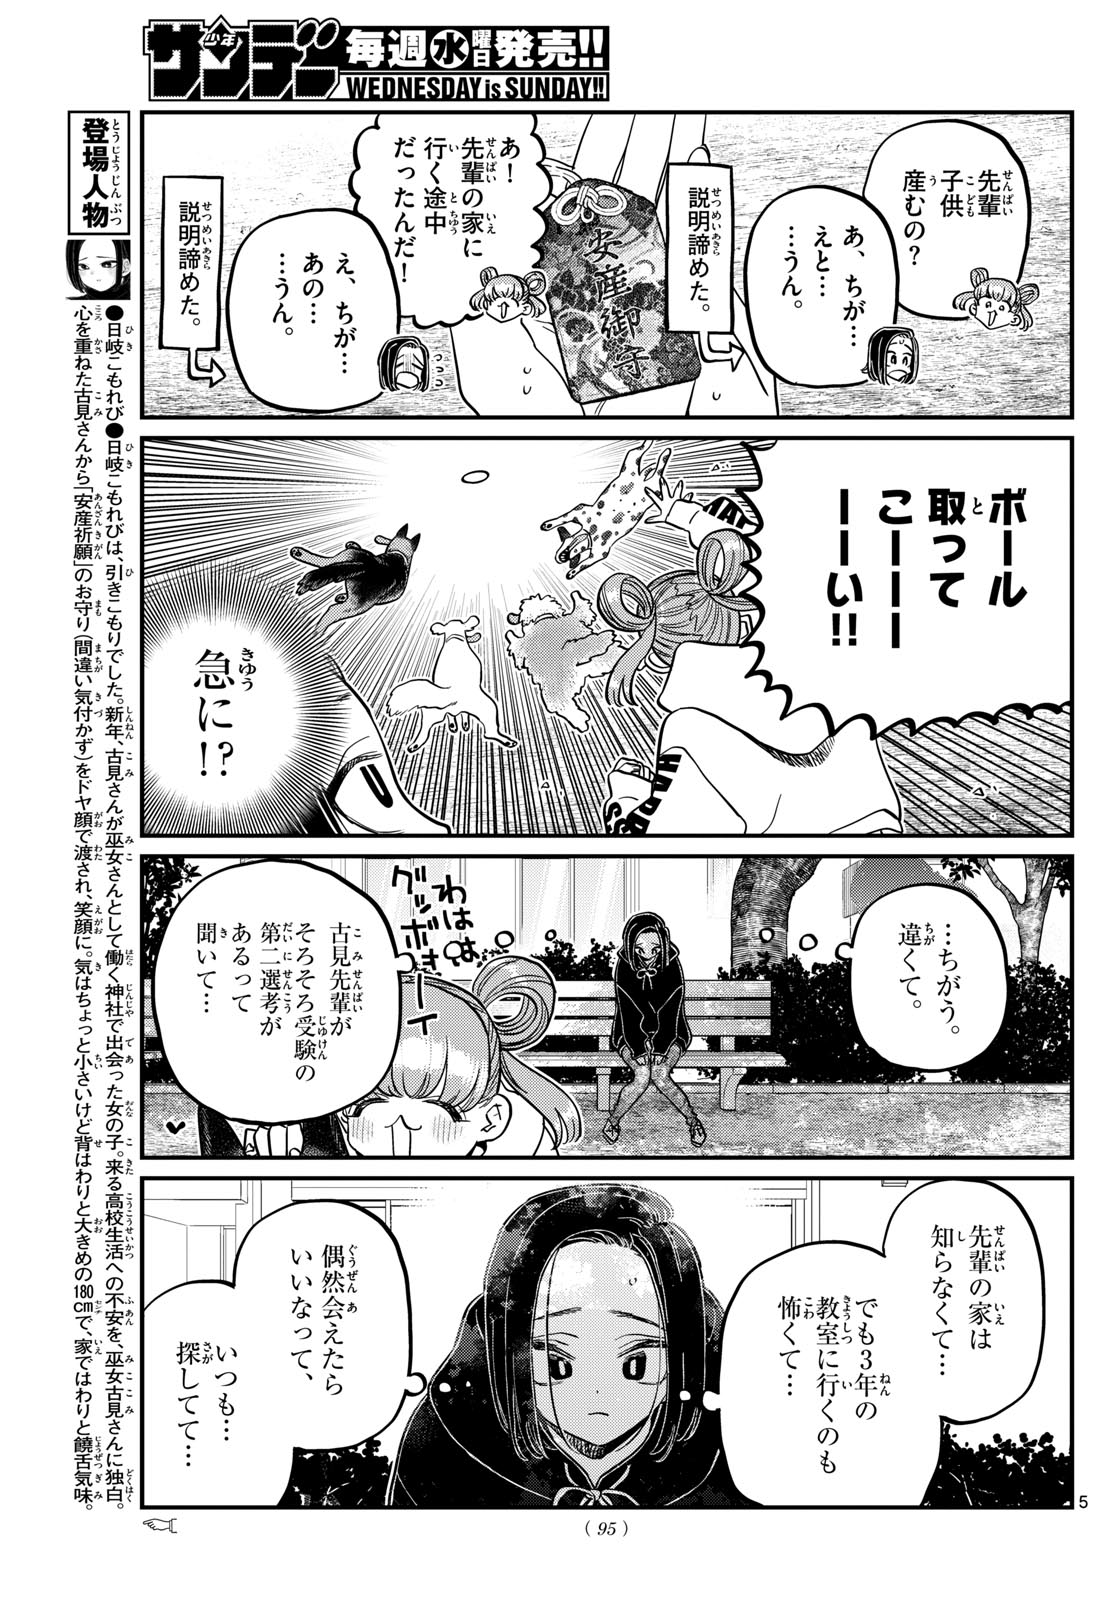 Komi-san wa Komyushou Desu - Chapter 435 - Page 5